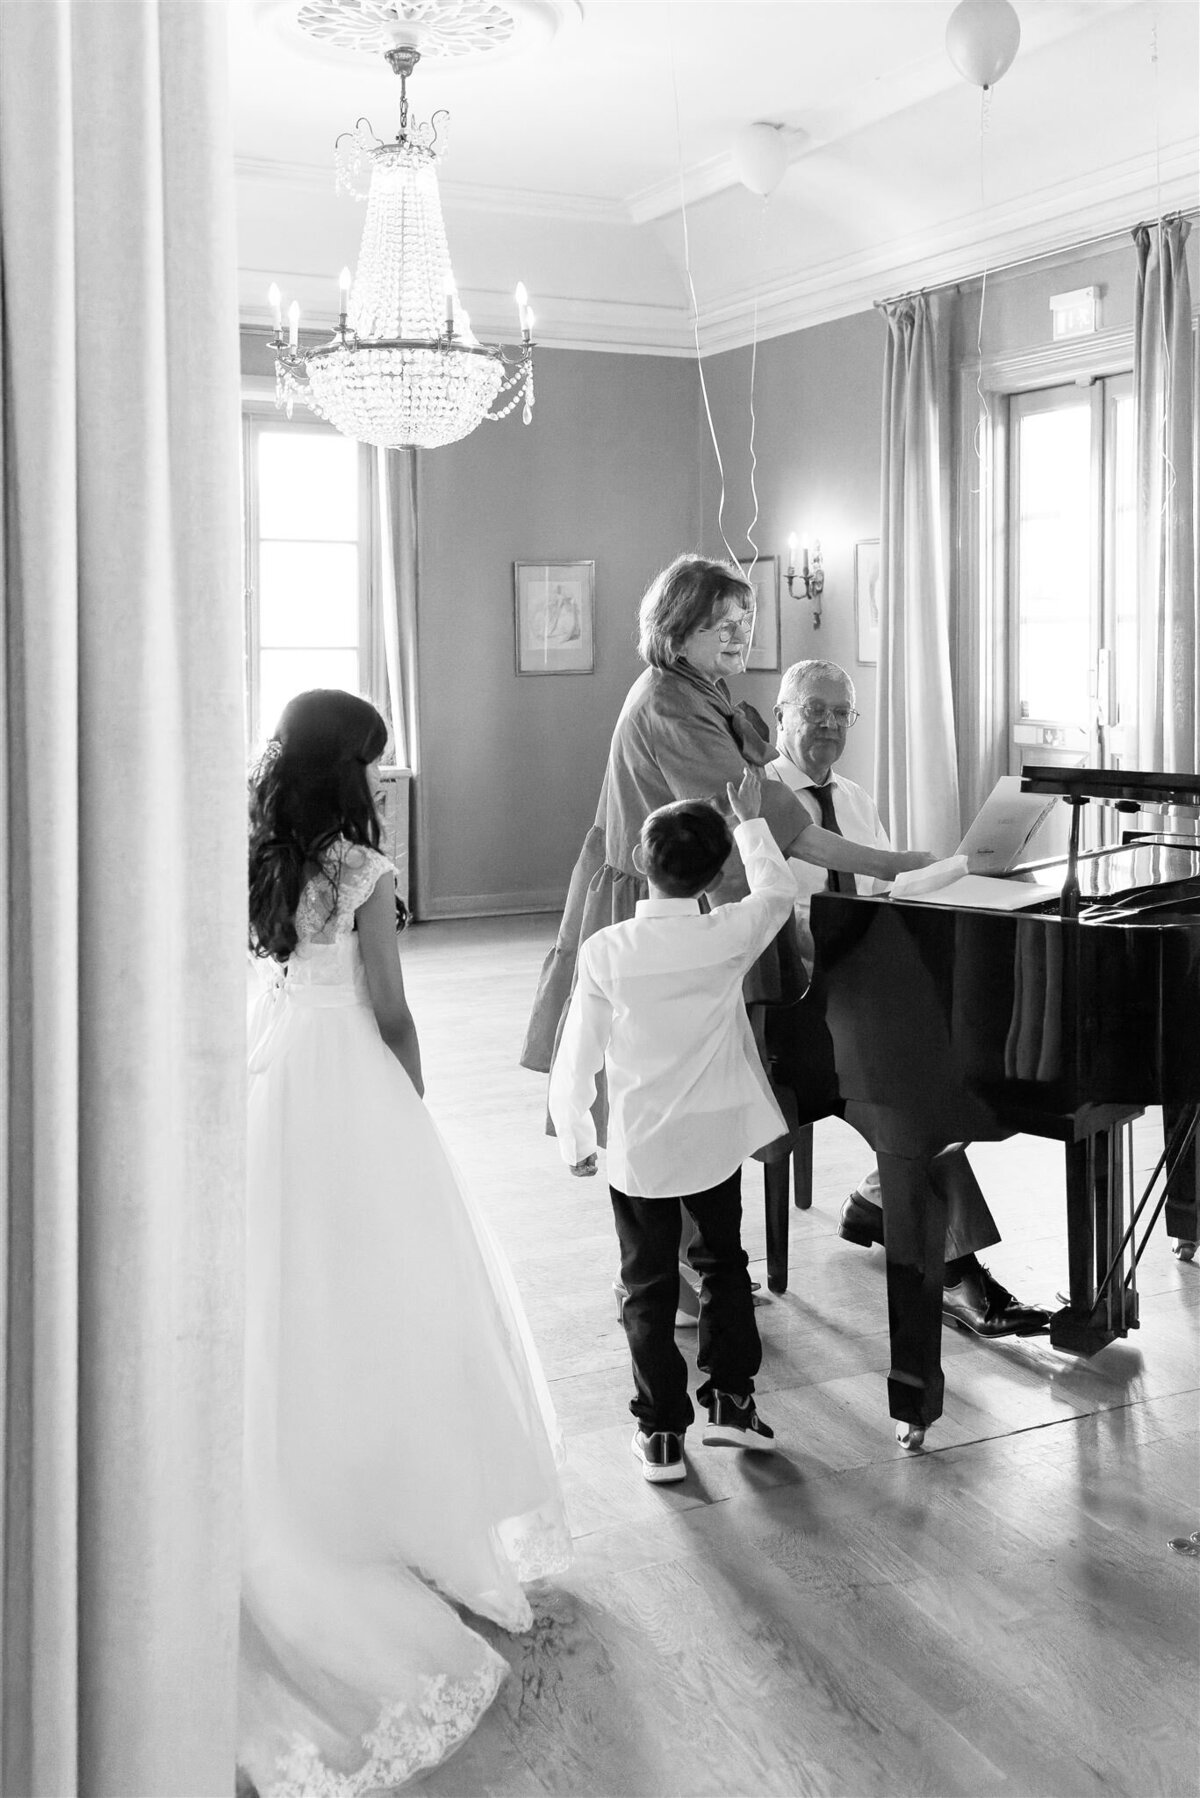 Wedding Photographer Anna Lundgren - helloalora_Wedding at Stallmästaregården in Stockholm Sweden9